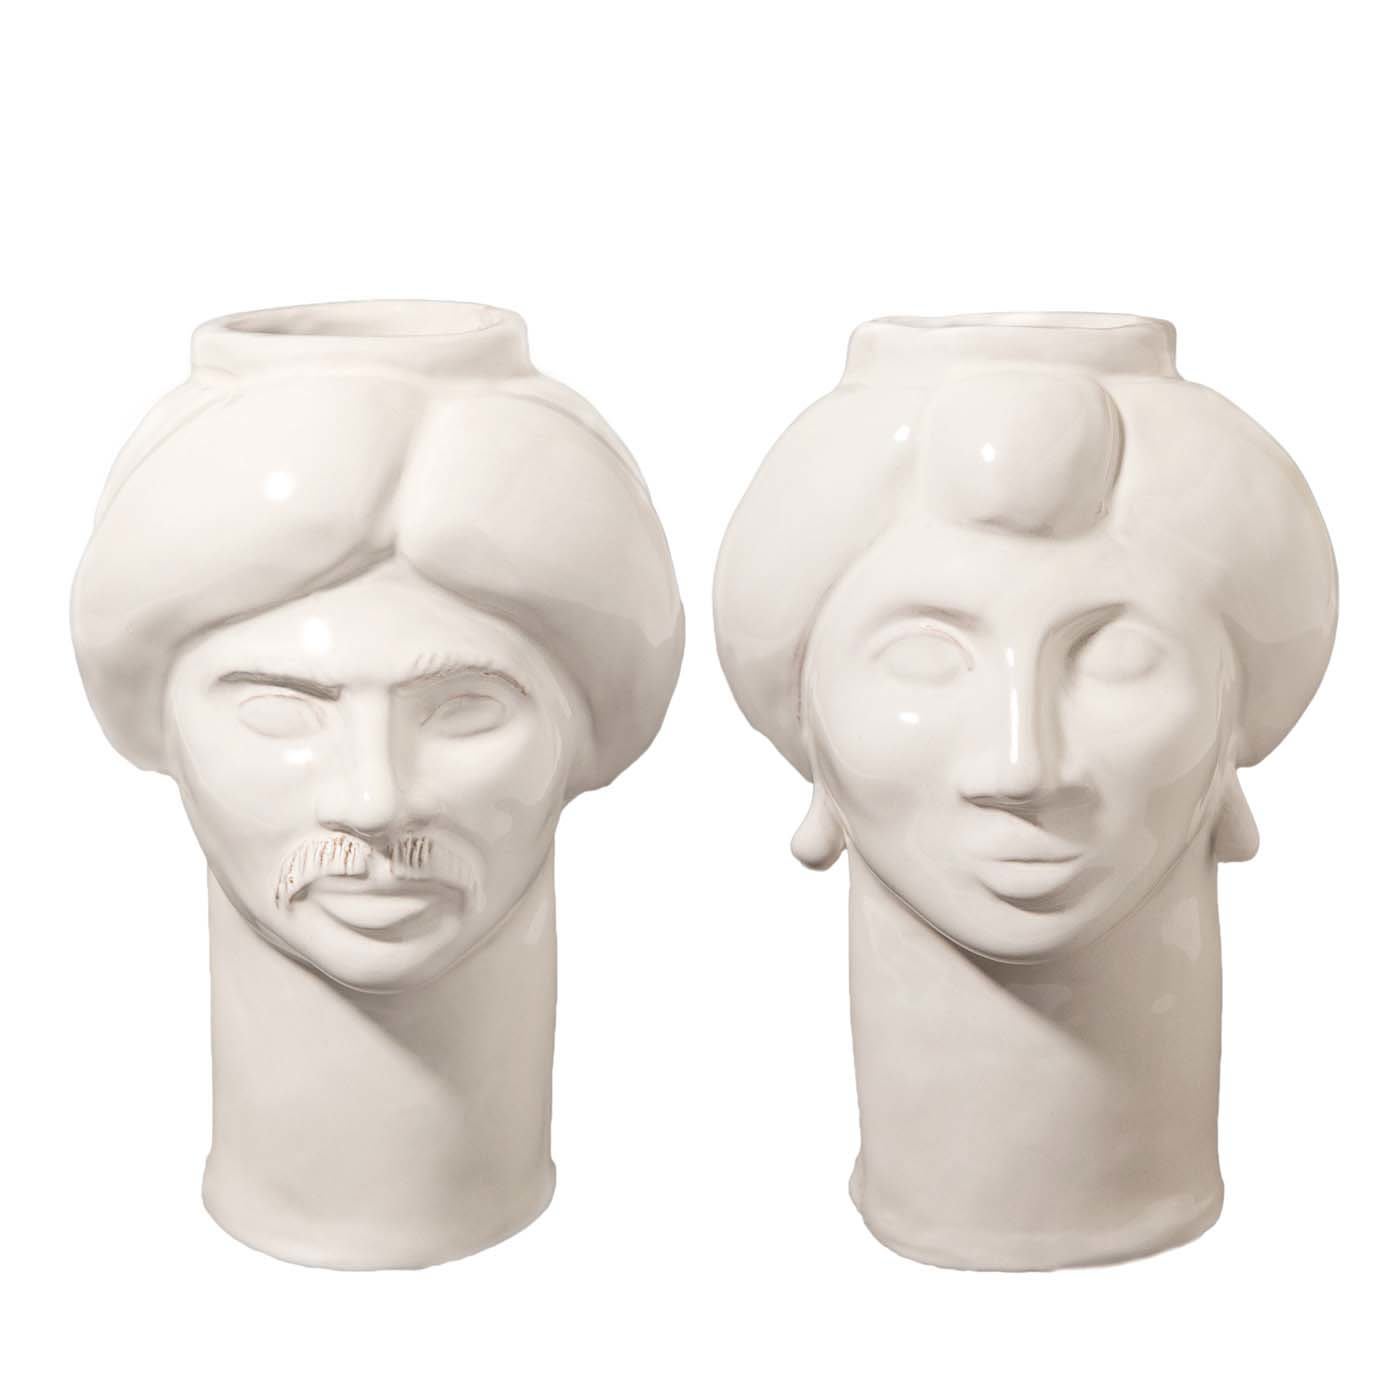 Solimano & Roxelana Off-White Vases - Crita Ceramiche